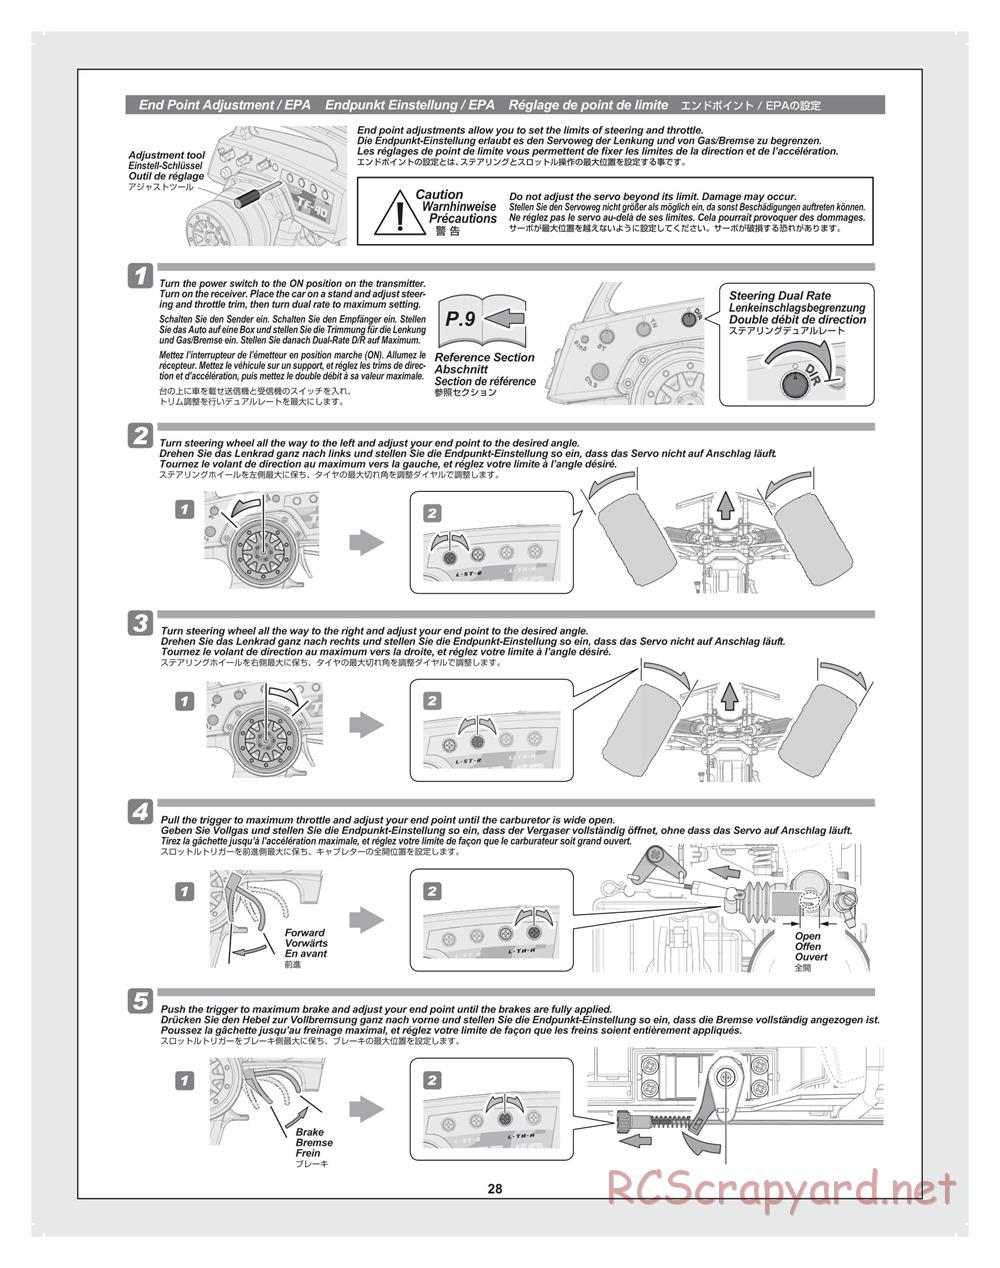 HPI - Bullet ST 3.0 (2011) - Manual - Page 28